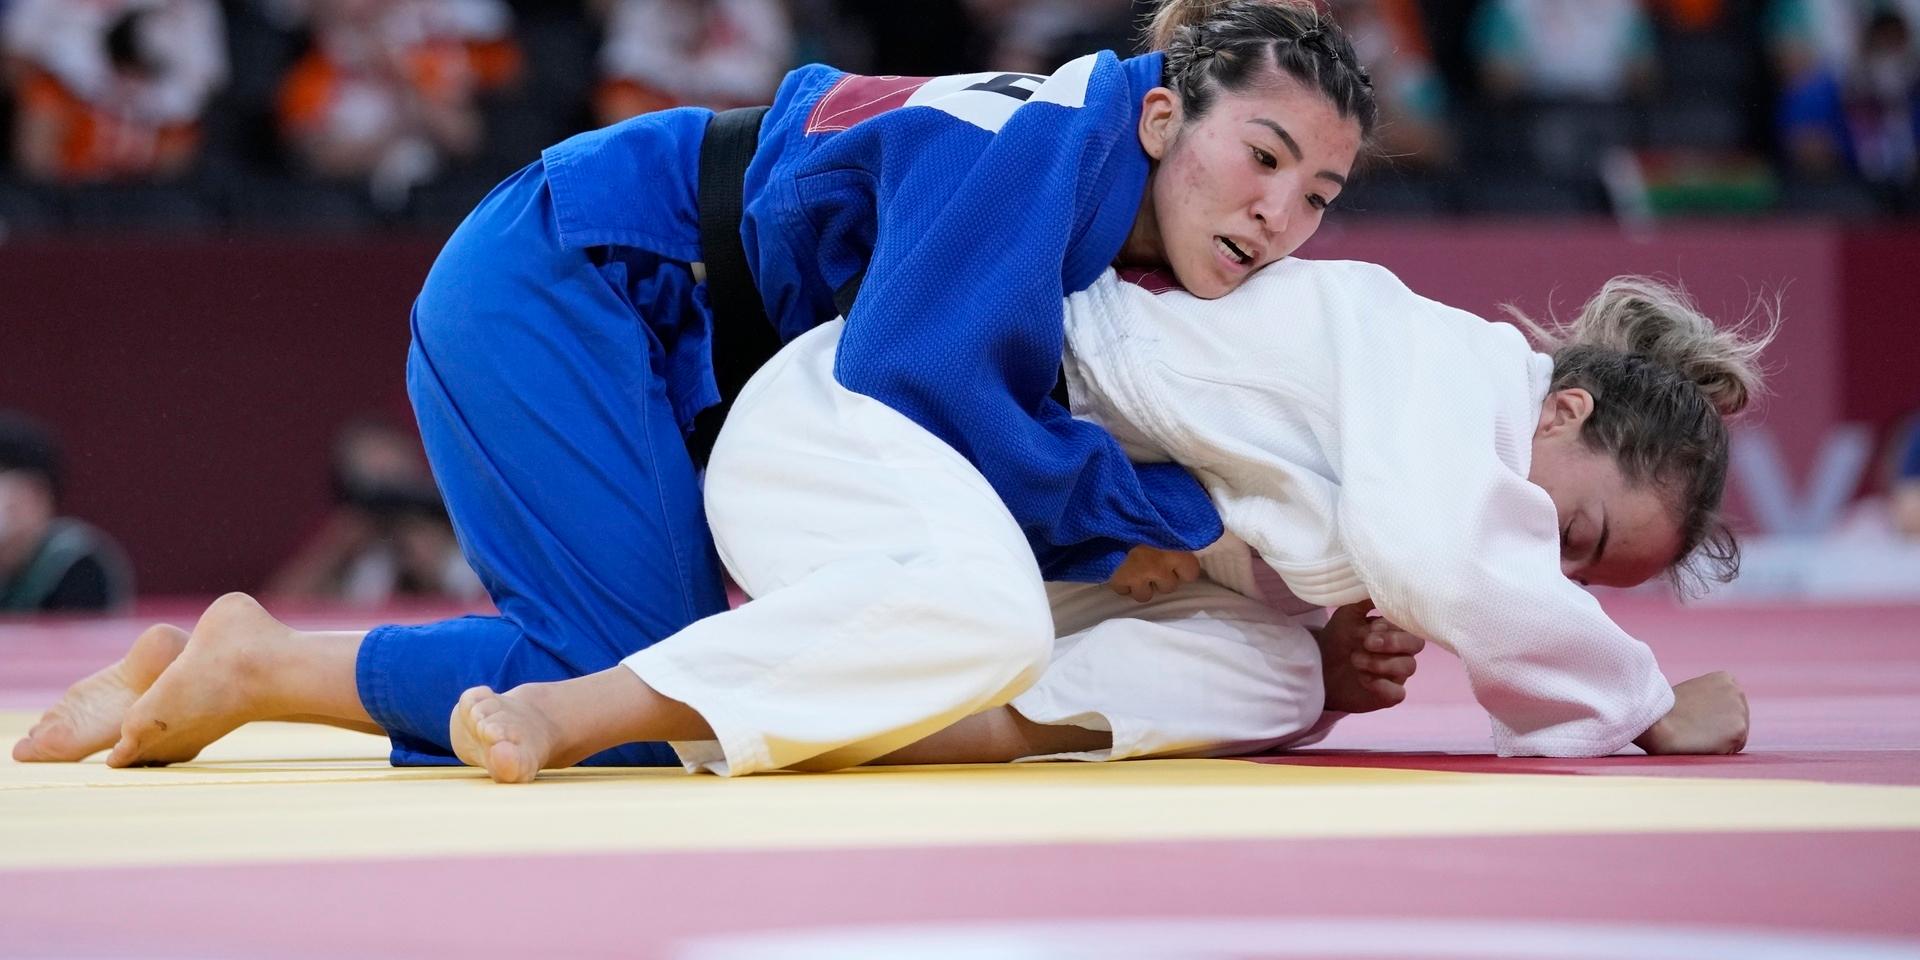 Gabriela Chibana i blå dress, slog ut Malawis judoka Harriet Boniface på bara 14 sekunder. Här möter hon en judoka från Kosovo i nästa omgång. 